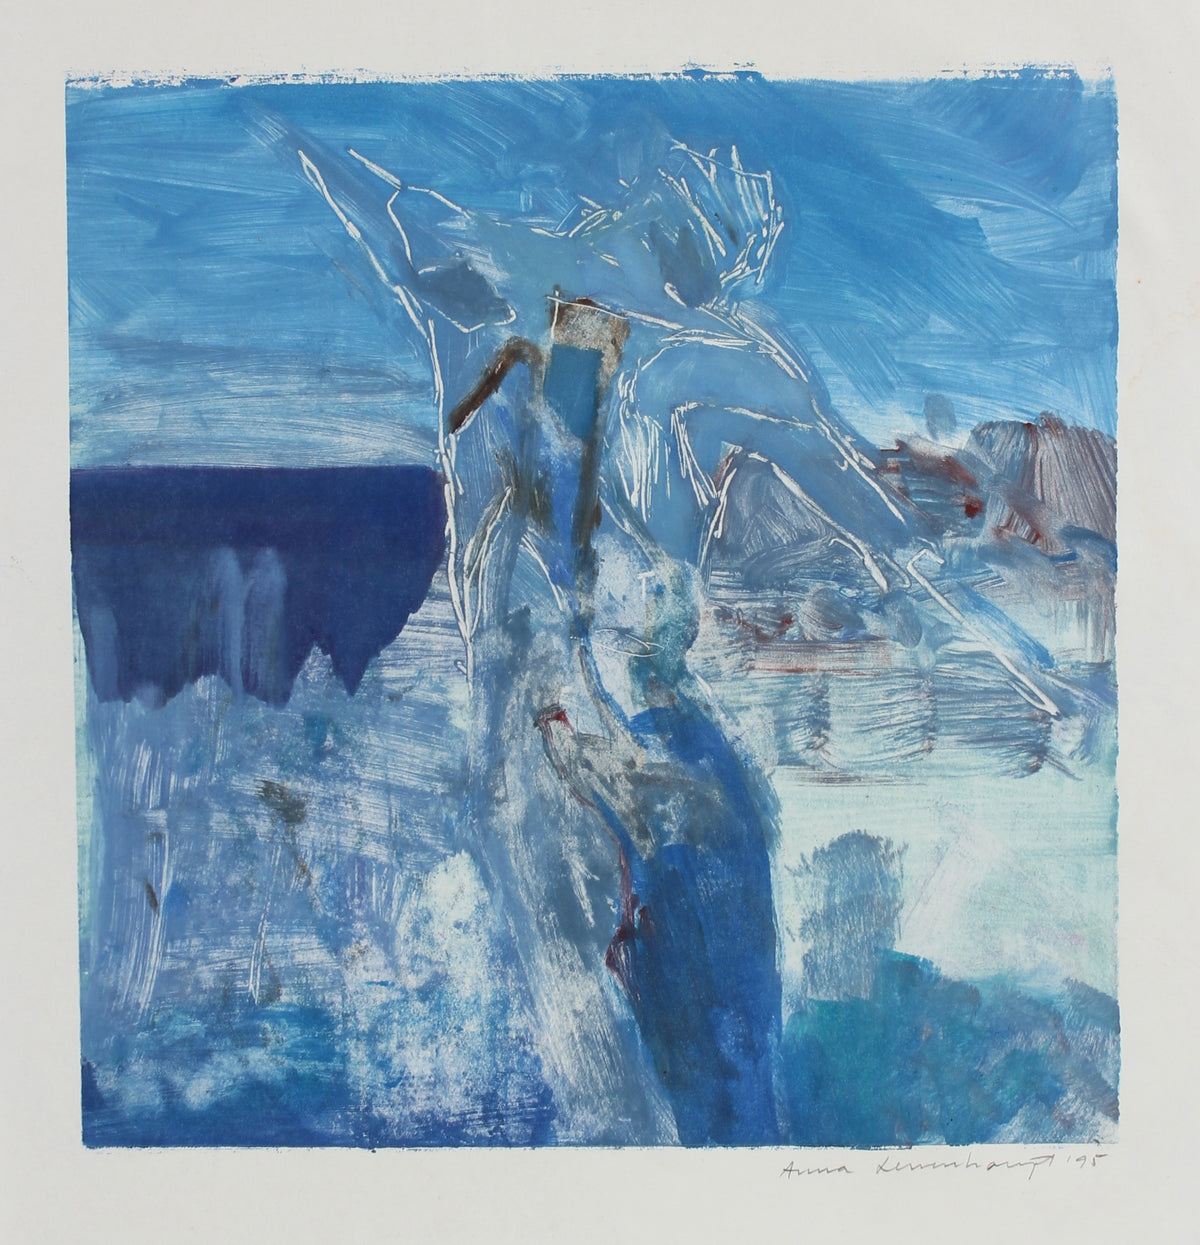 Figure &amp; Form Abstraction - Blue&lt;br&gt;1995 Monotype&lt;br&gt;&lt;br&gt;#99179